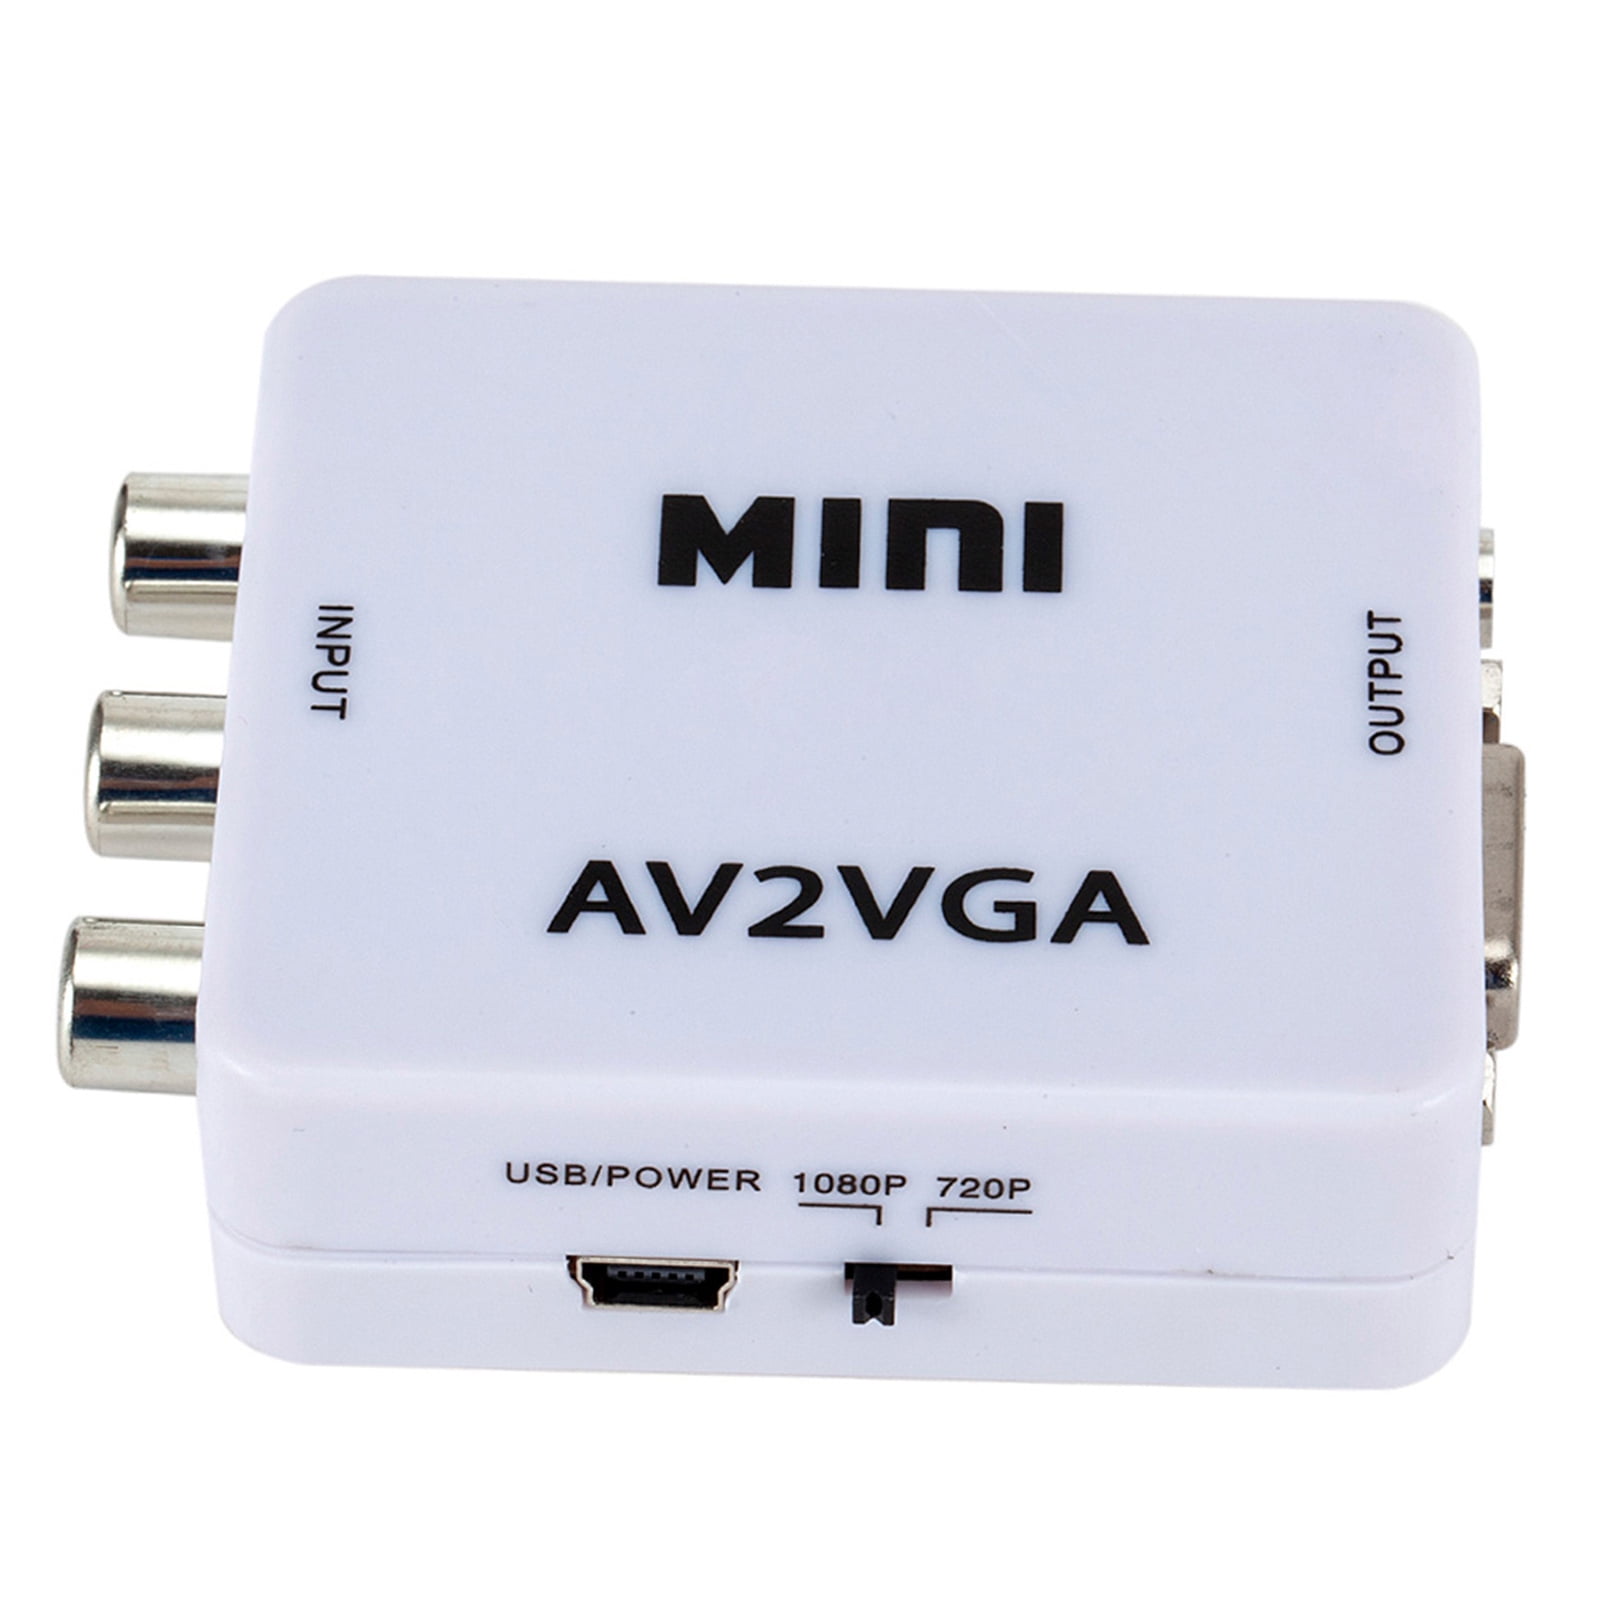 Convertisseur vidéo/audio vers USB VG-202, Transmission & Conversion AV